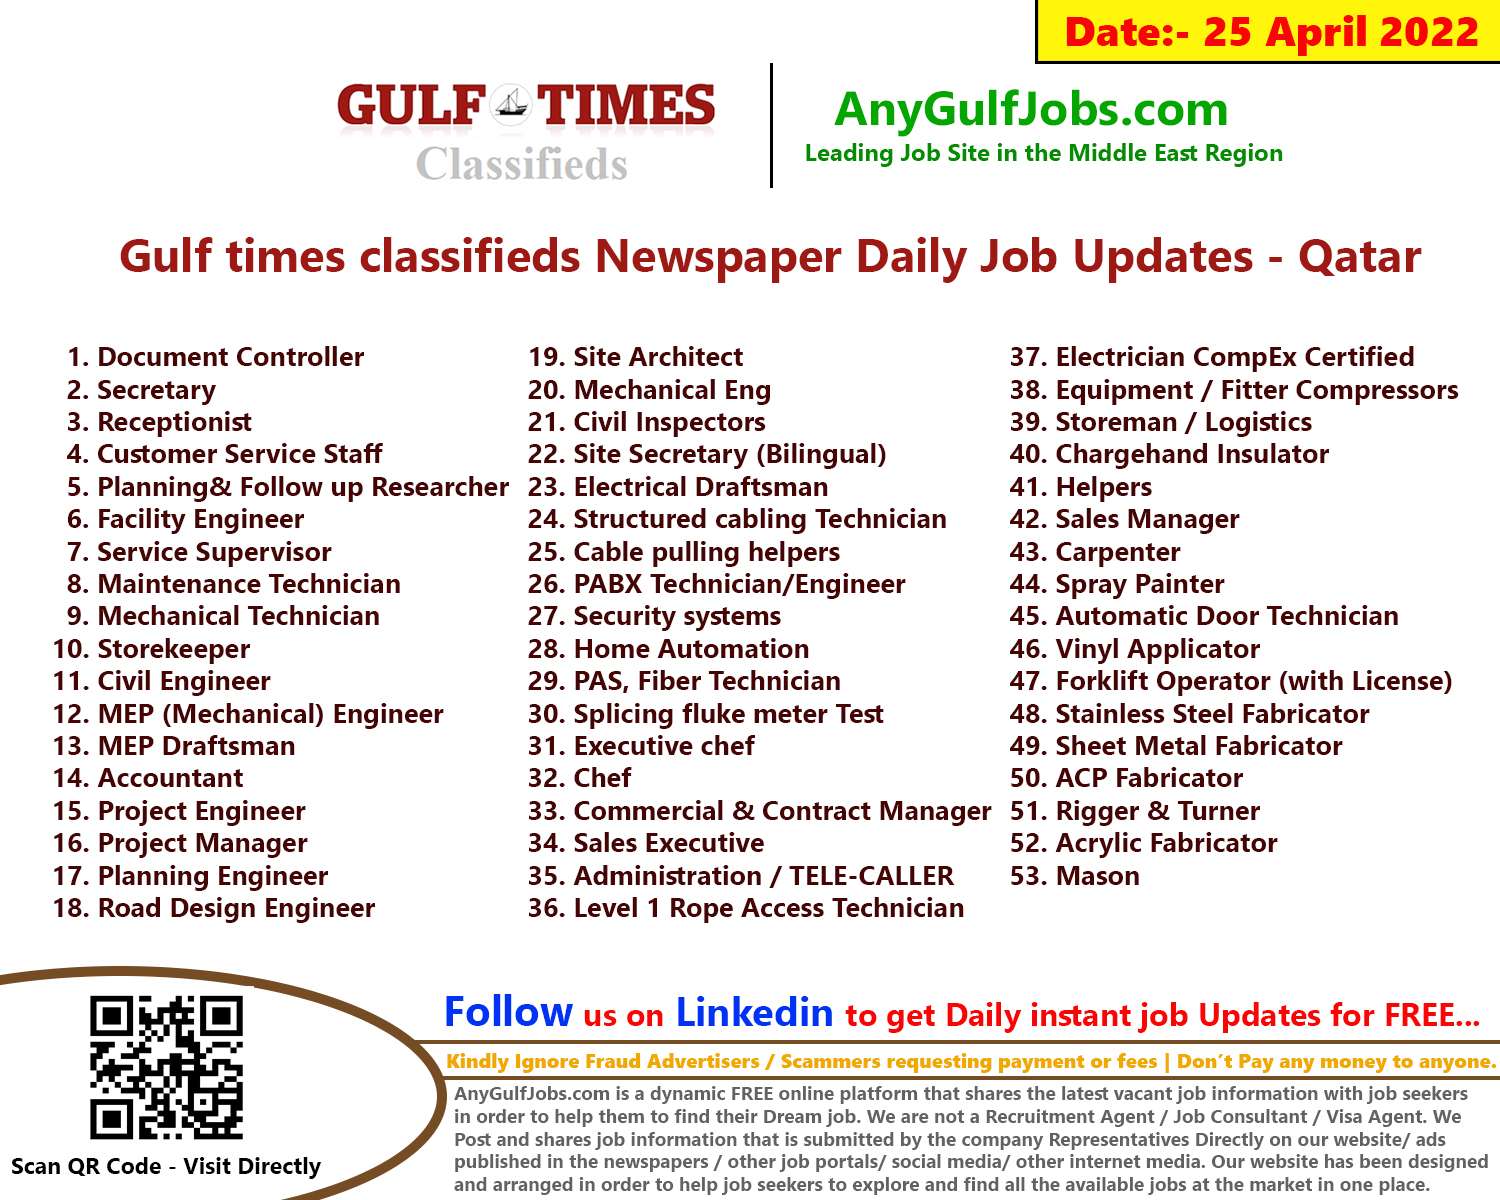 Gulf times classifieds Job Vacancies Qatar - 25 April 2022